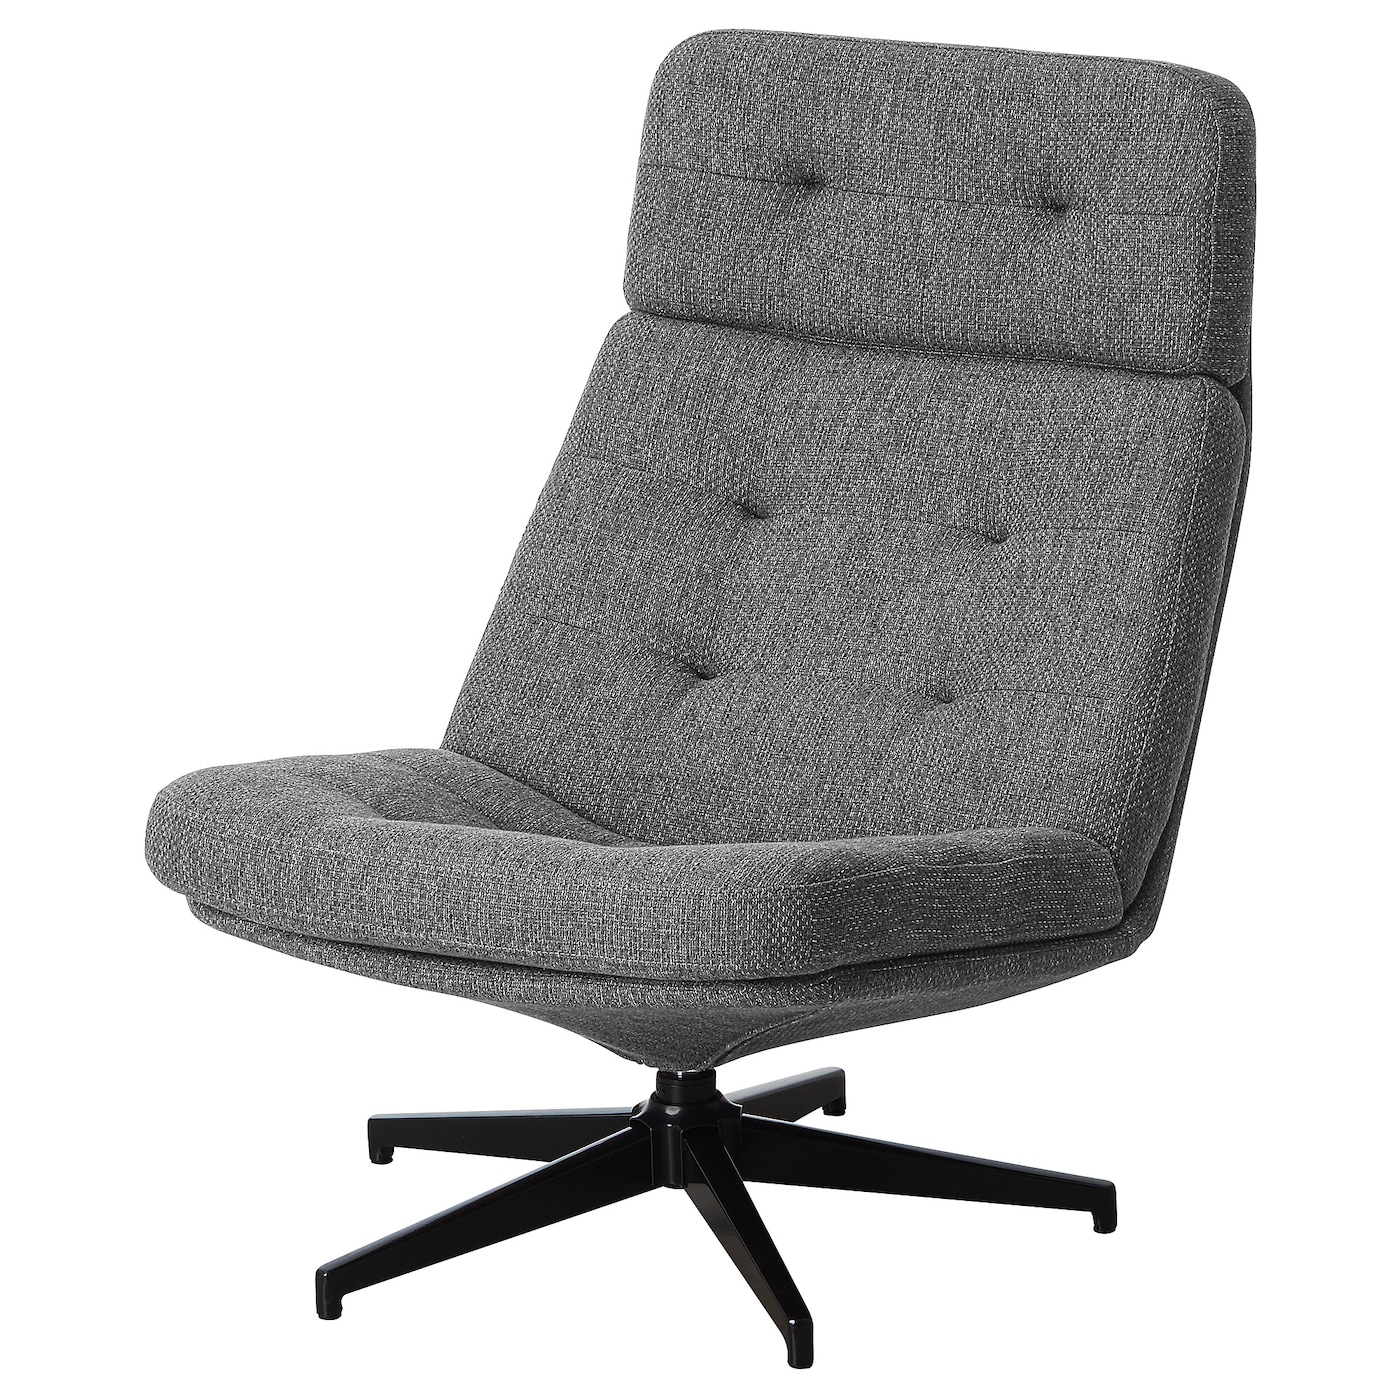 ХАВБЕРГ Вращающееся кресло, Лейде серый/черный HAVBERG IKEA стоматологическое кресло седло кресло регулируемое подъемное вращающееся компьютерное кресло эргономичные универсальные детали для оф